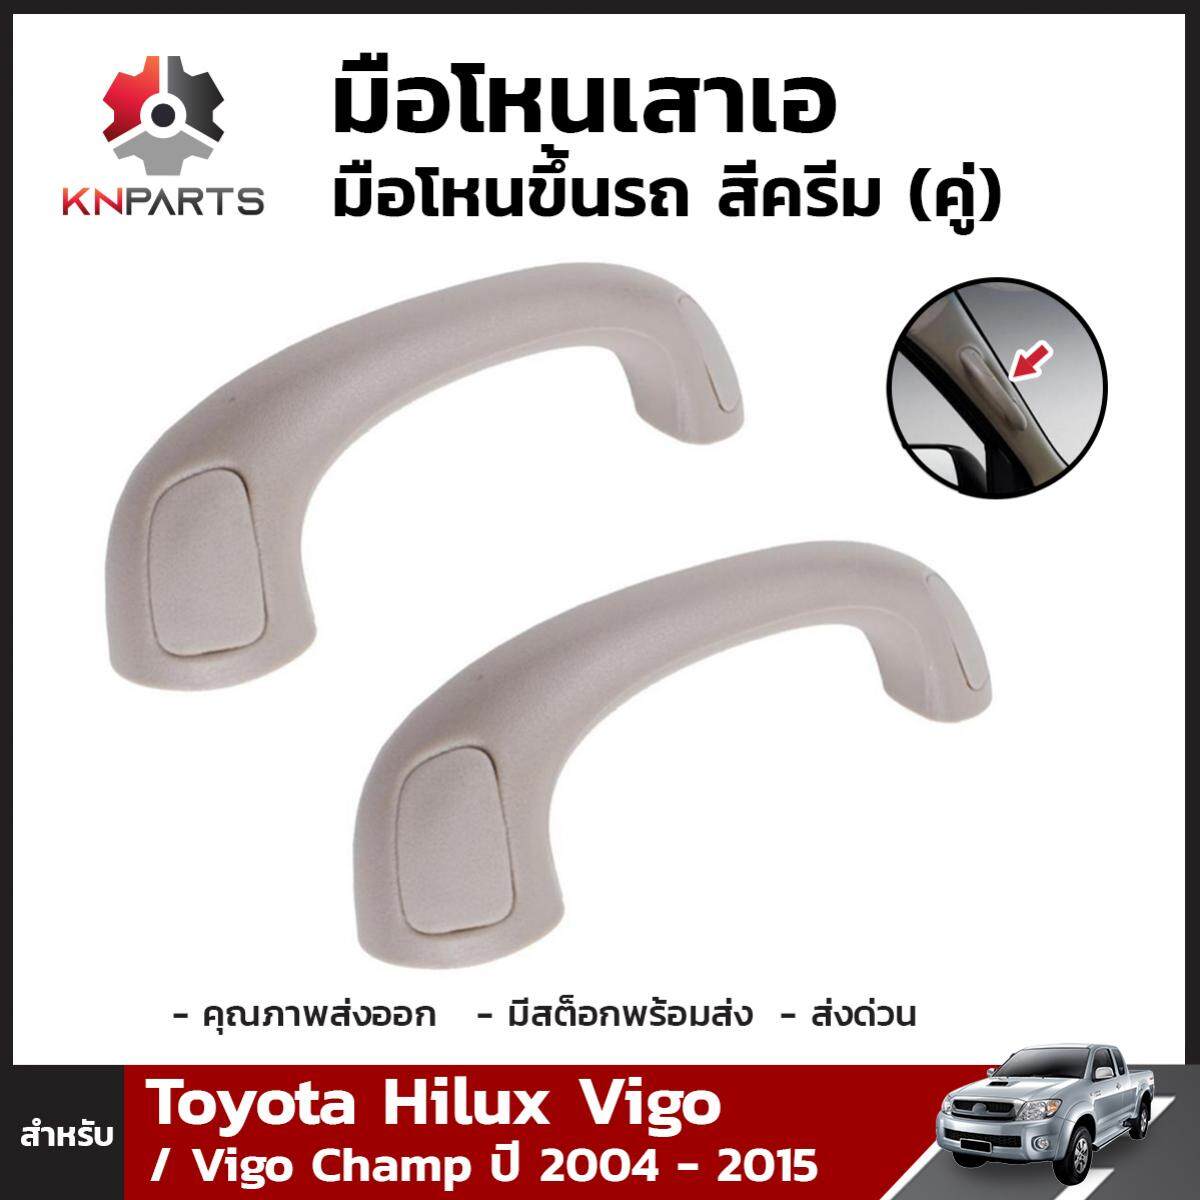 มือโหนเสาเอ มือโหนขึ้นรถ สีครีม สำหรับ Toyota Hilux Vigo ปี 2004-2015 (คู่)